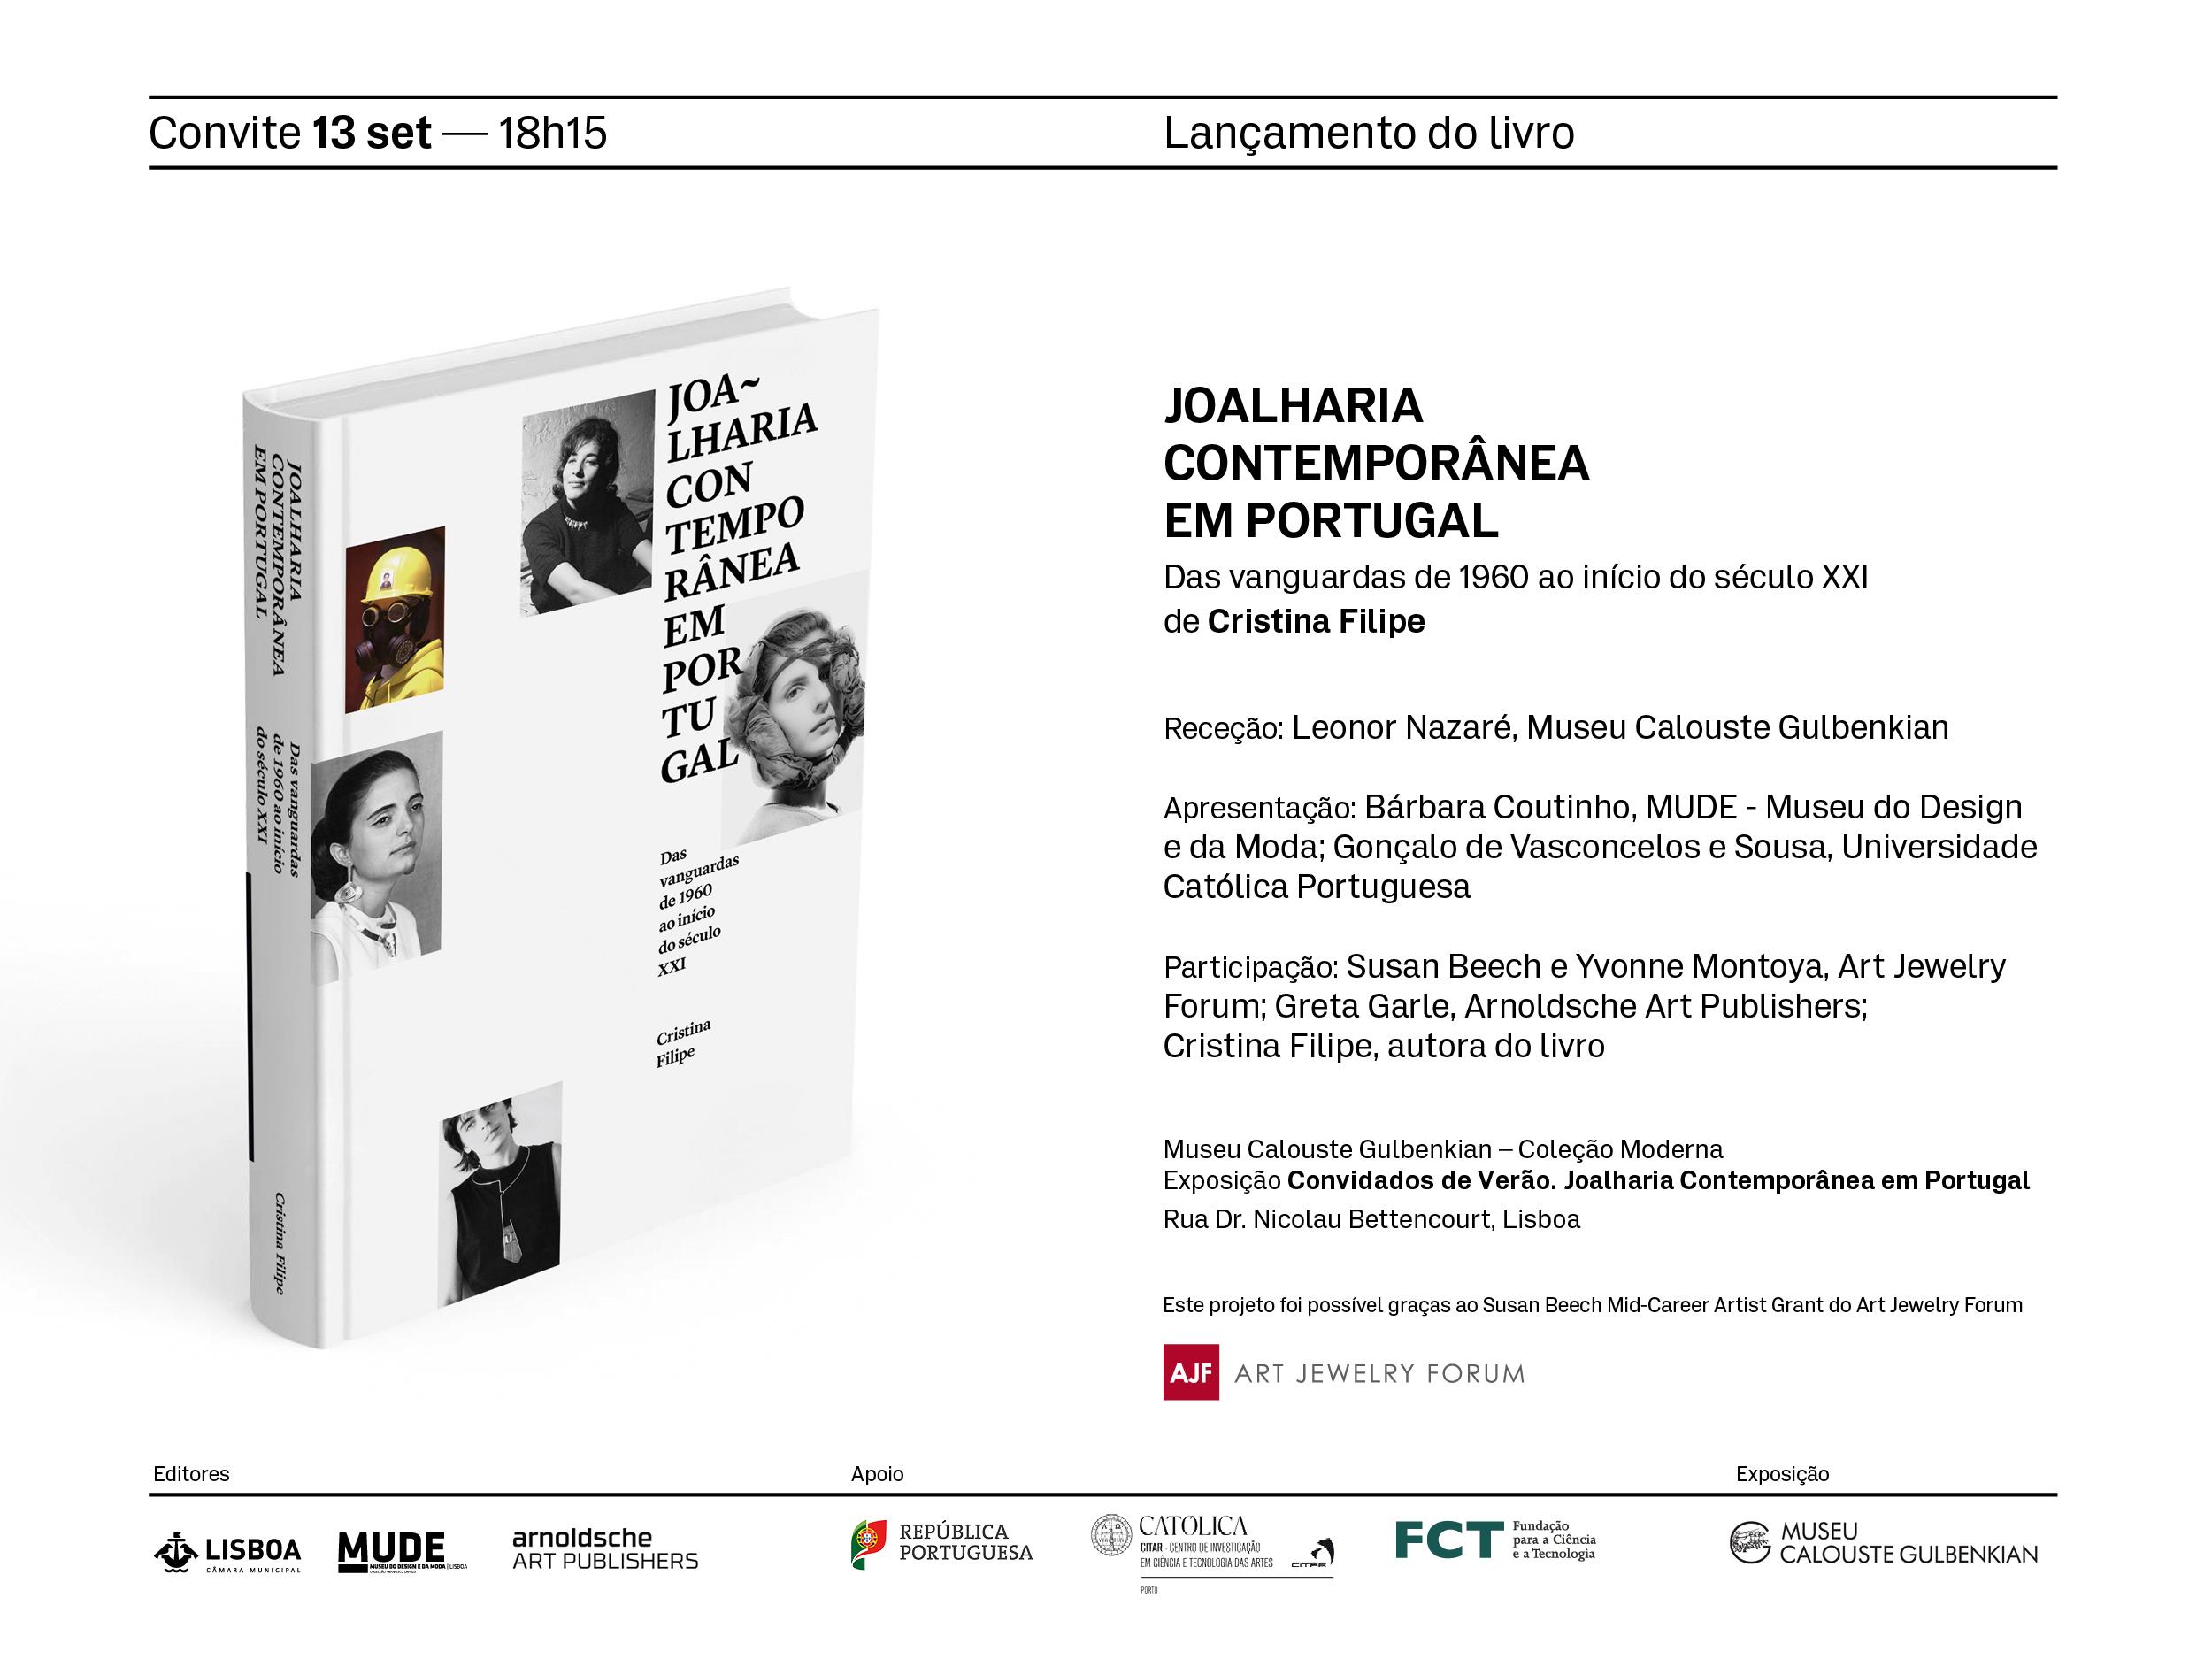 Joalharia Contemporânea em Portugal [lançamento editorial]